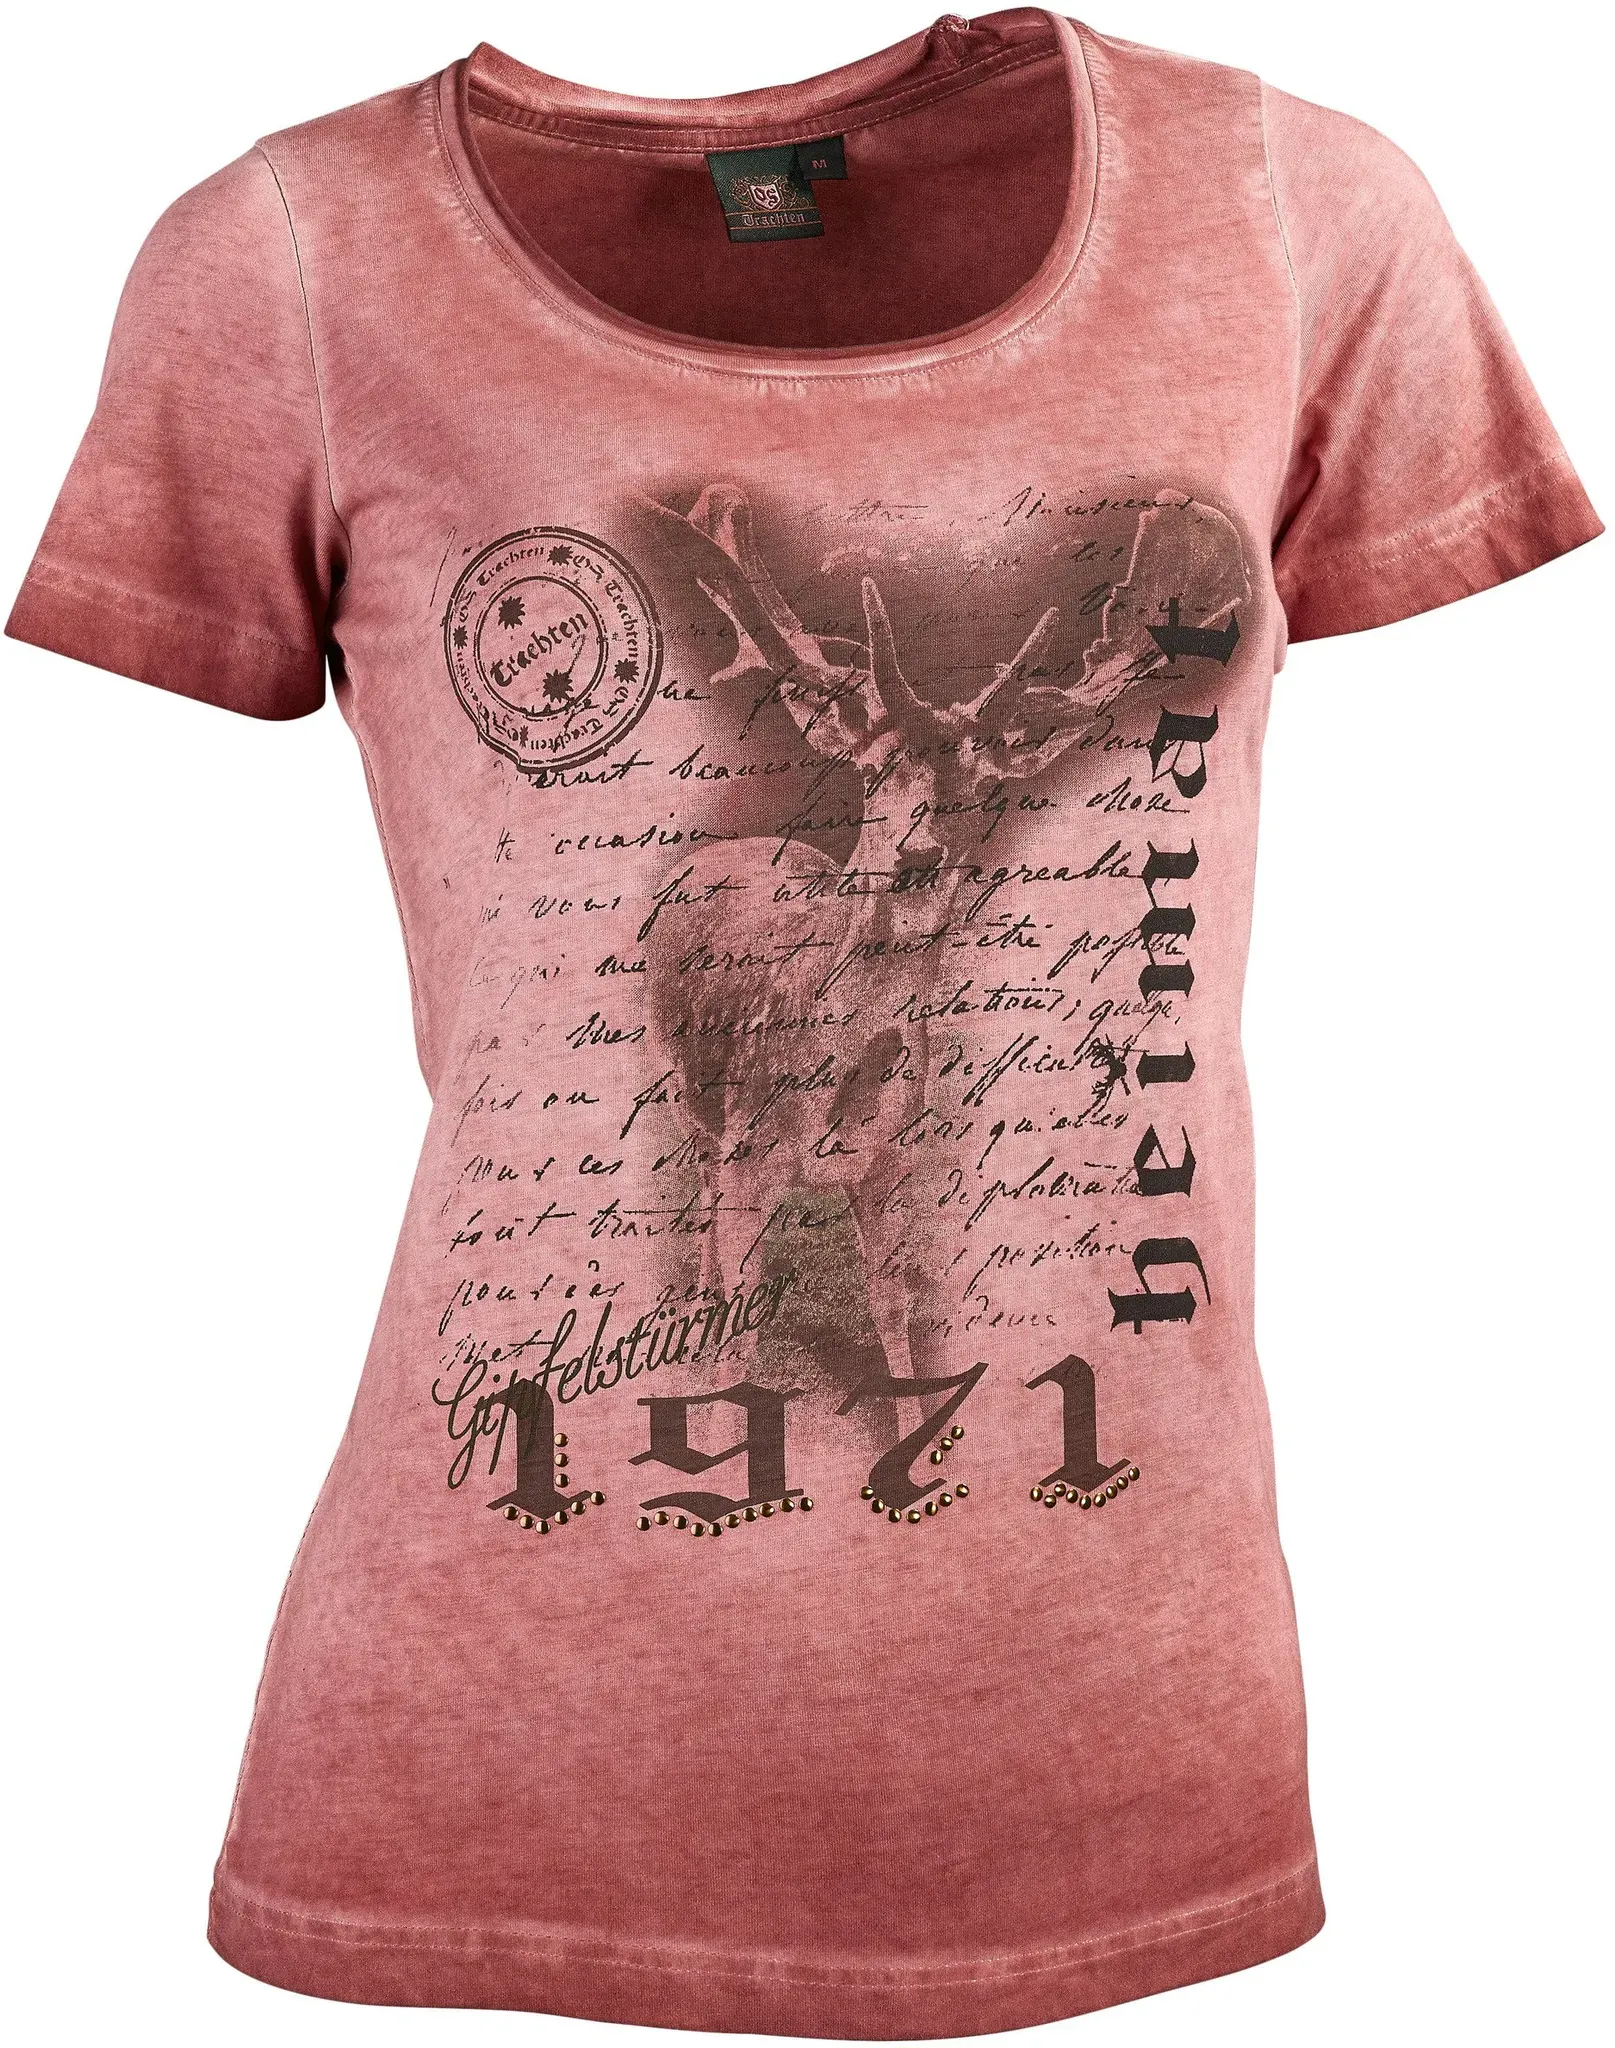 OS-Trachten Damen-T-Shirt mit Print, weinrot, M